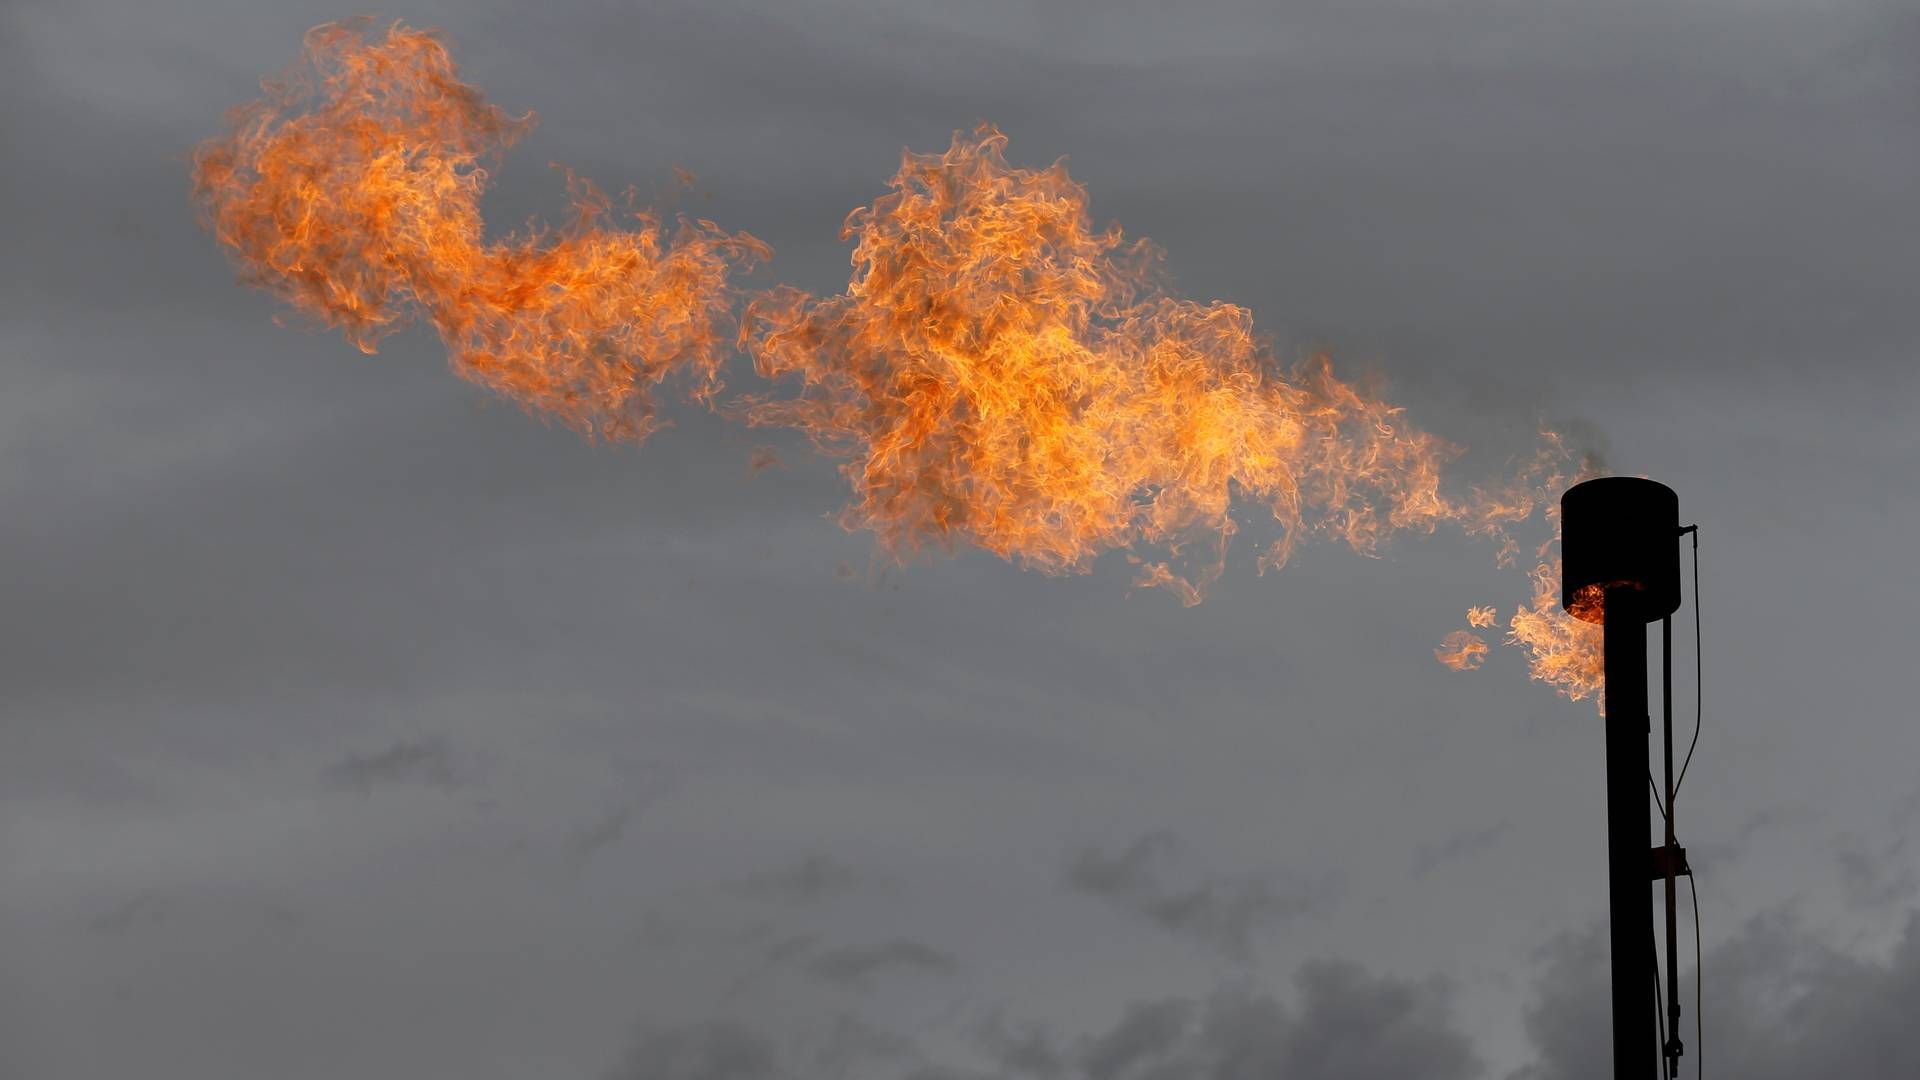 Flaring er bevidst afbrænding af overskudsgas - oftest brugt for at sikre personalet på f.eks. en olieplatform. Praksissen sender store mængder af den særdeles skadelige metan op i atmosfæren og bidrager bl.a. til at smelte indlandsisen. | Foto: ANGUS MORDANT/REUTERS / X06552